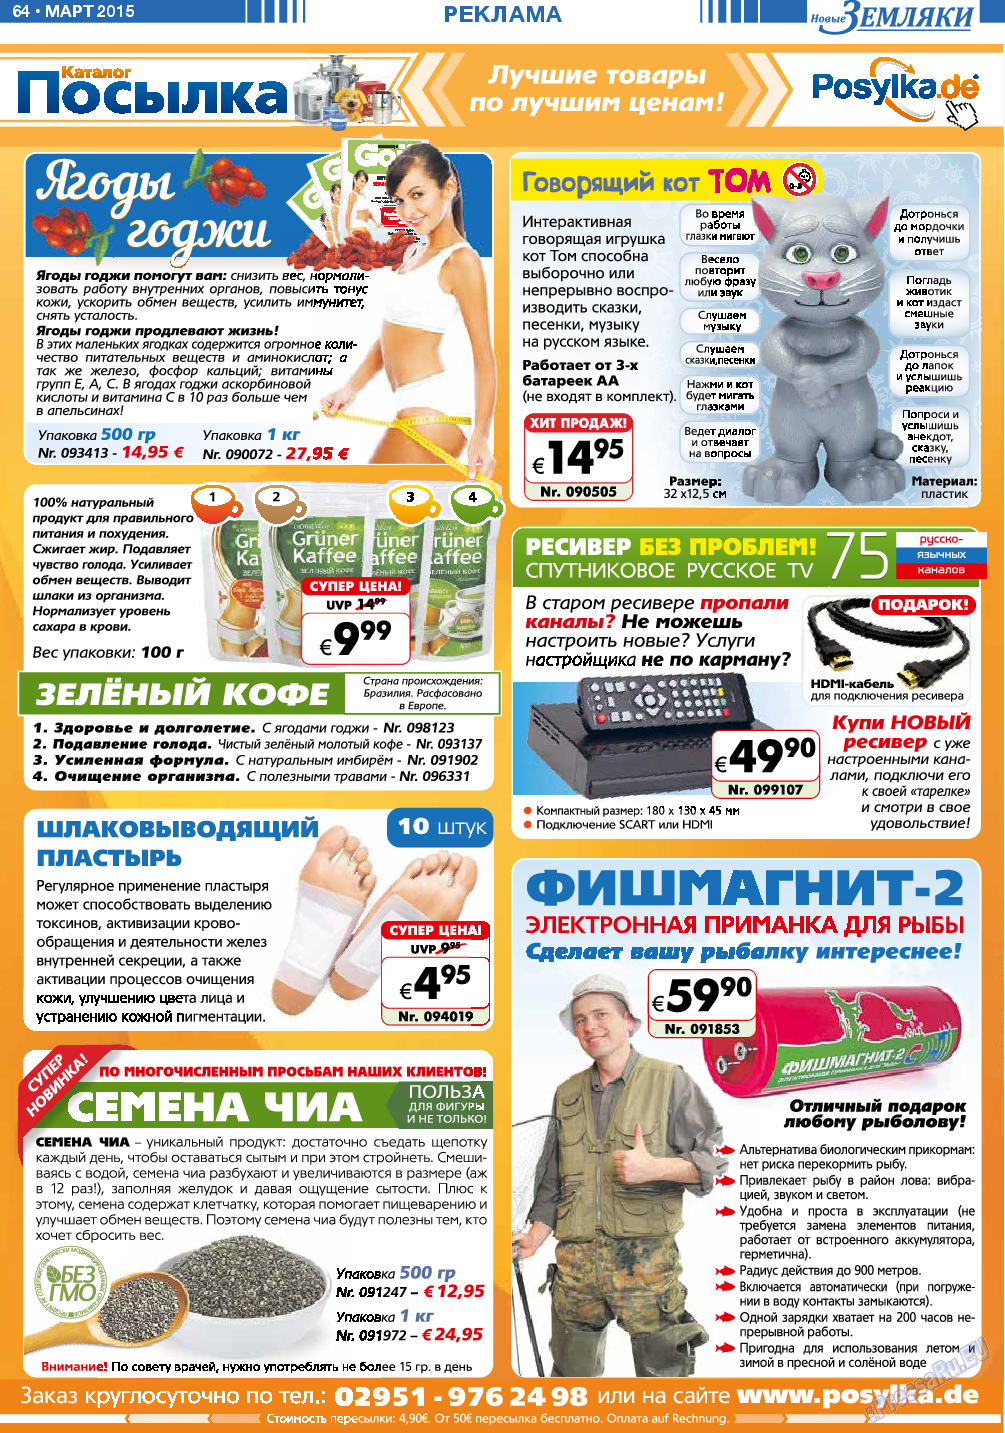 Новые Земляки, газета. 2015 №3 стр.64